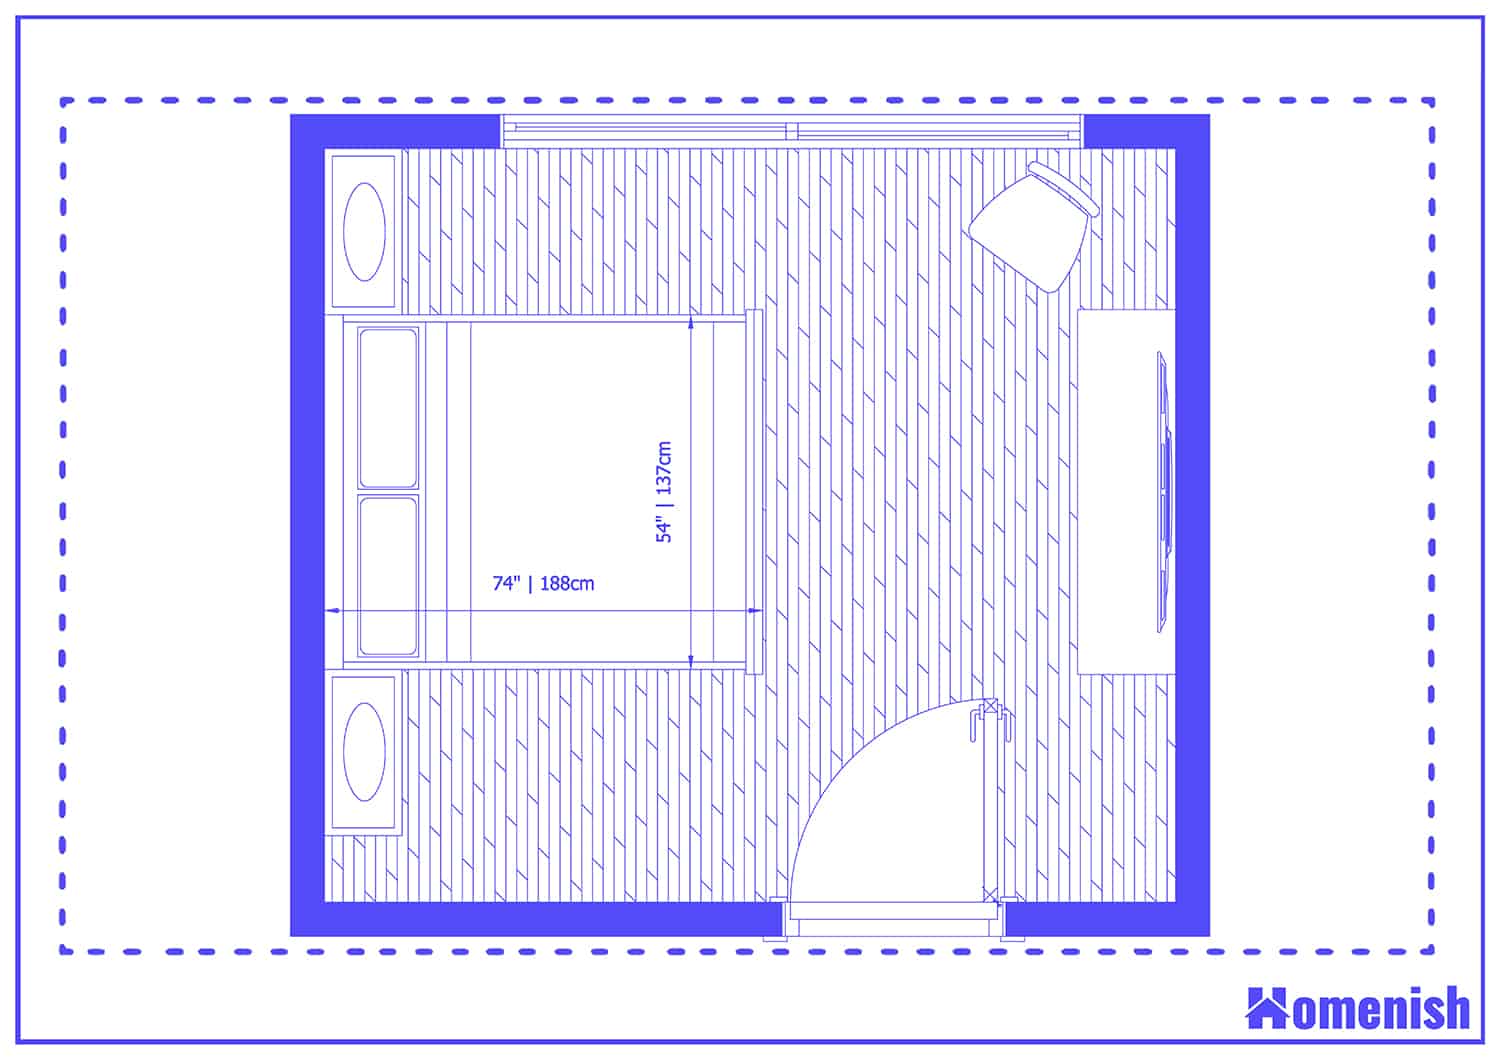 Terrace Bedroom Layout Floor Plan